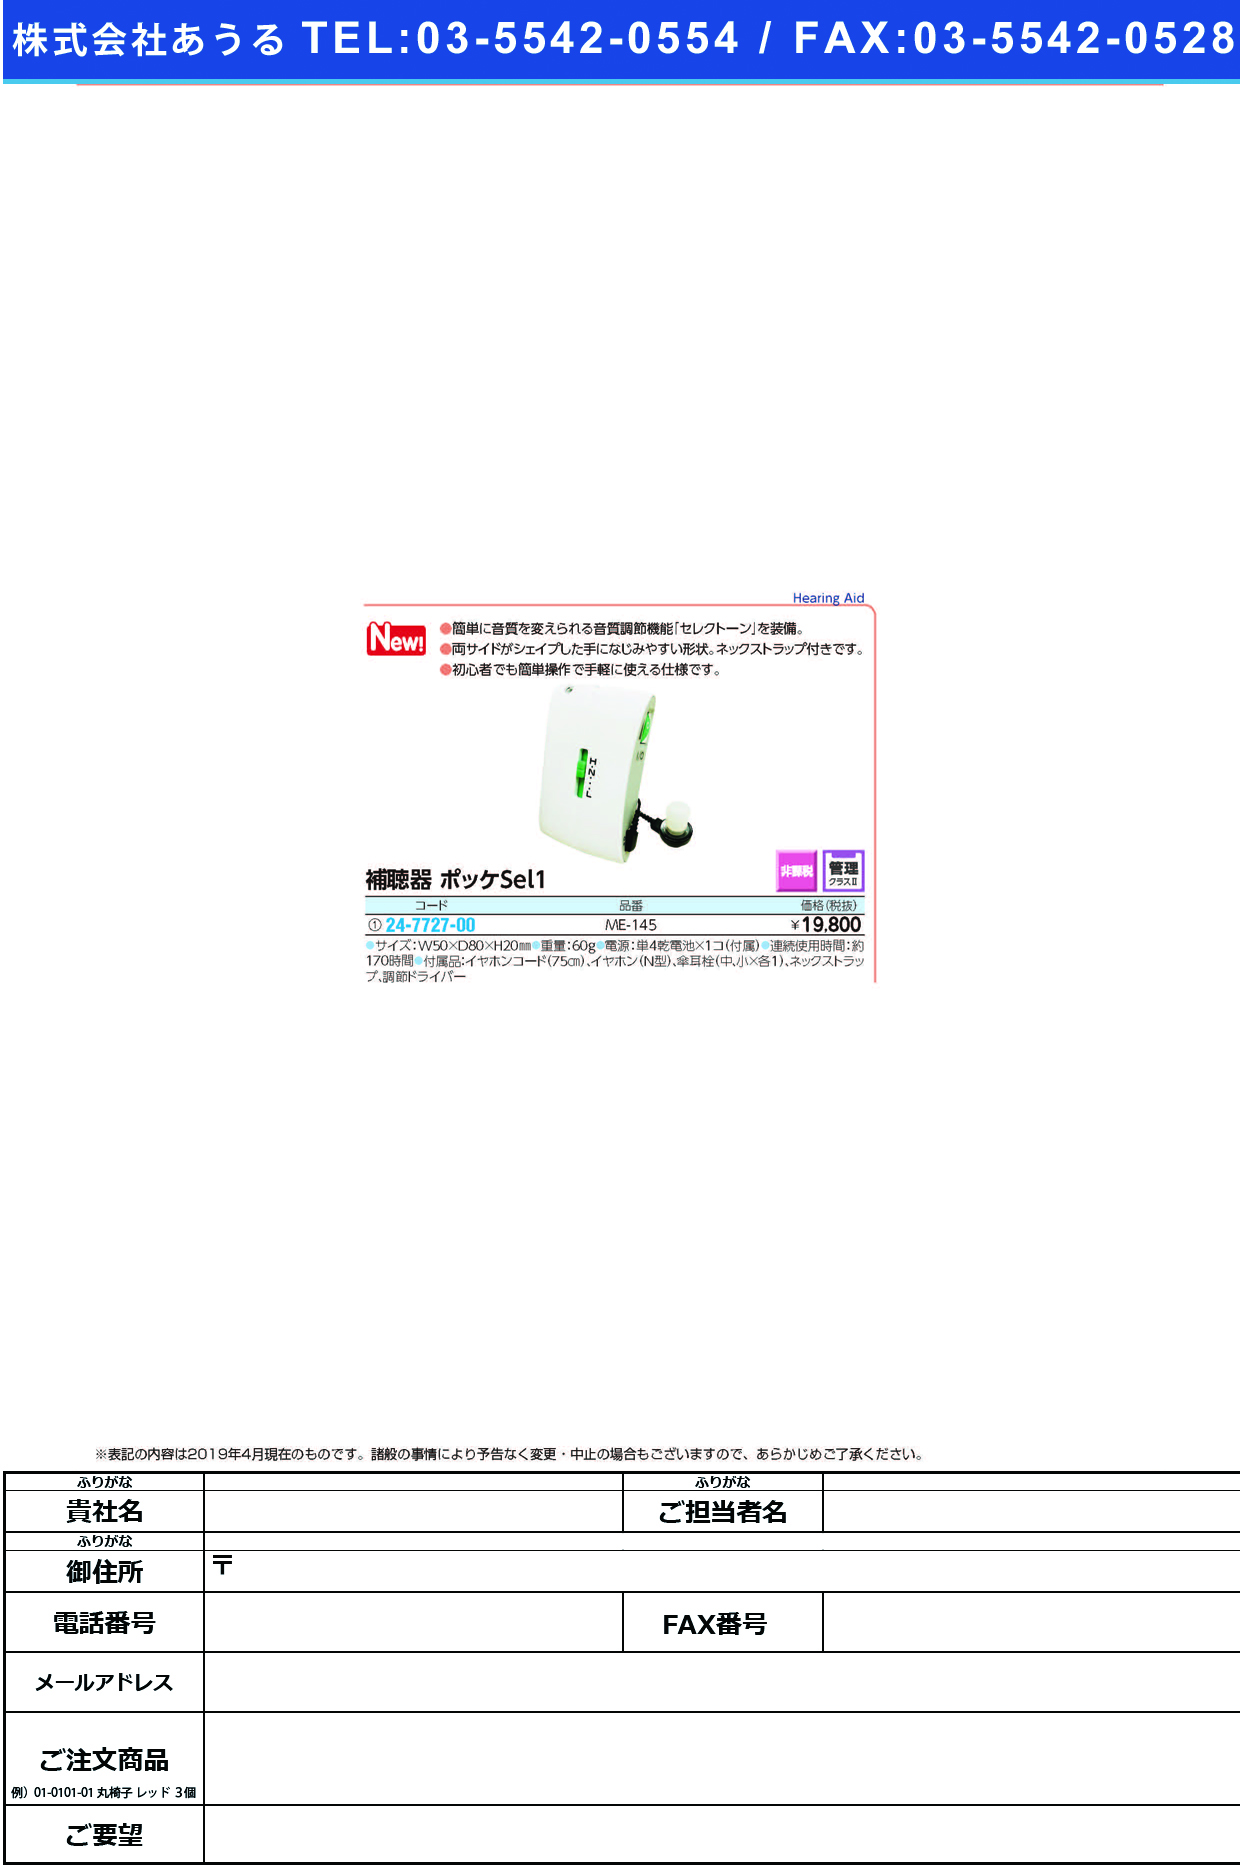 (24-7727-00)補聴器　ポッケＳｅｌ１ME-145 ﾎﾁｮｳｷﾎﾟｯｹｼﾘﾜﾝ(ミミー電子)【1台単位】【2019年カタログ商品】